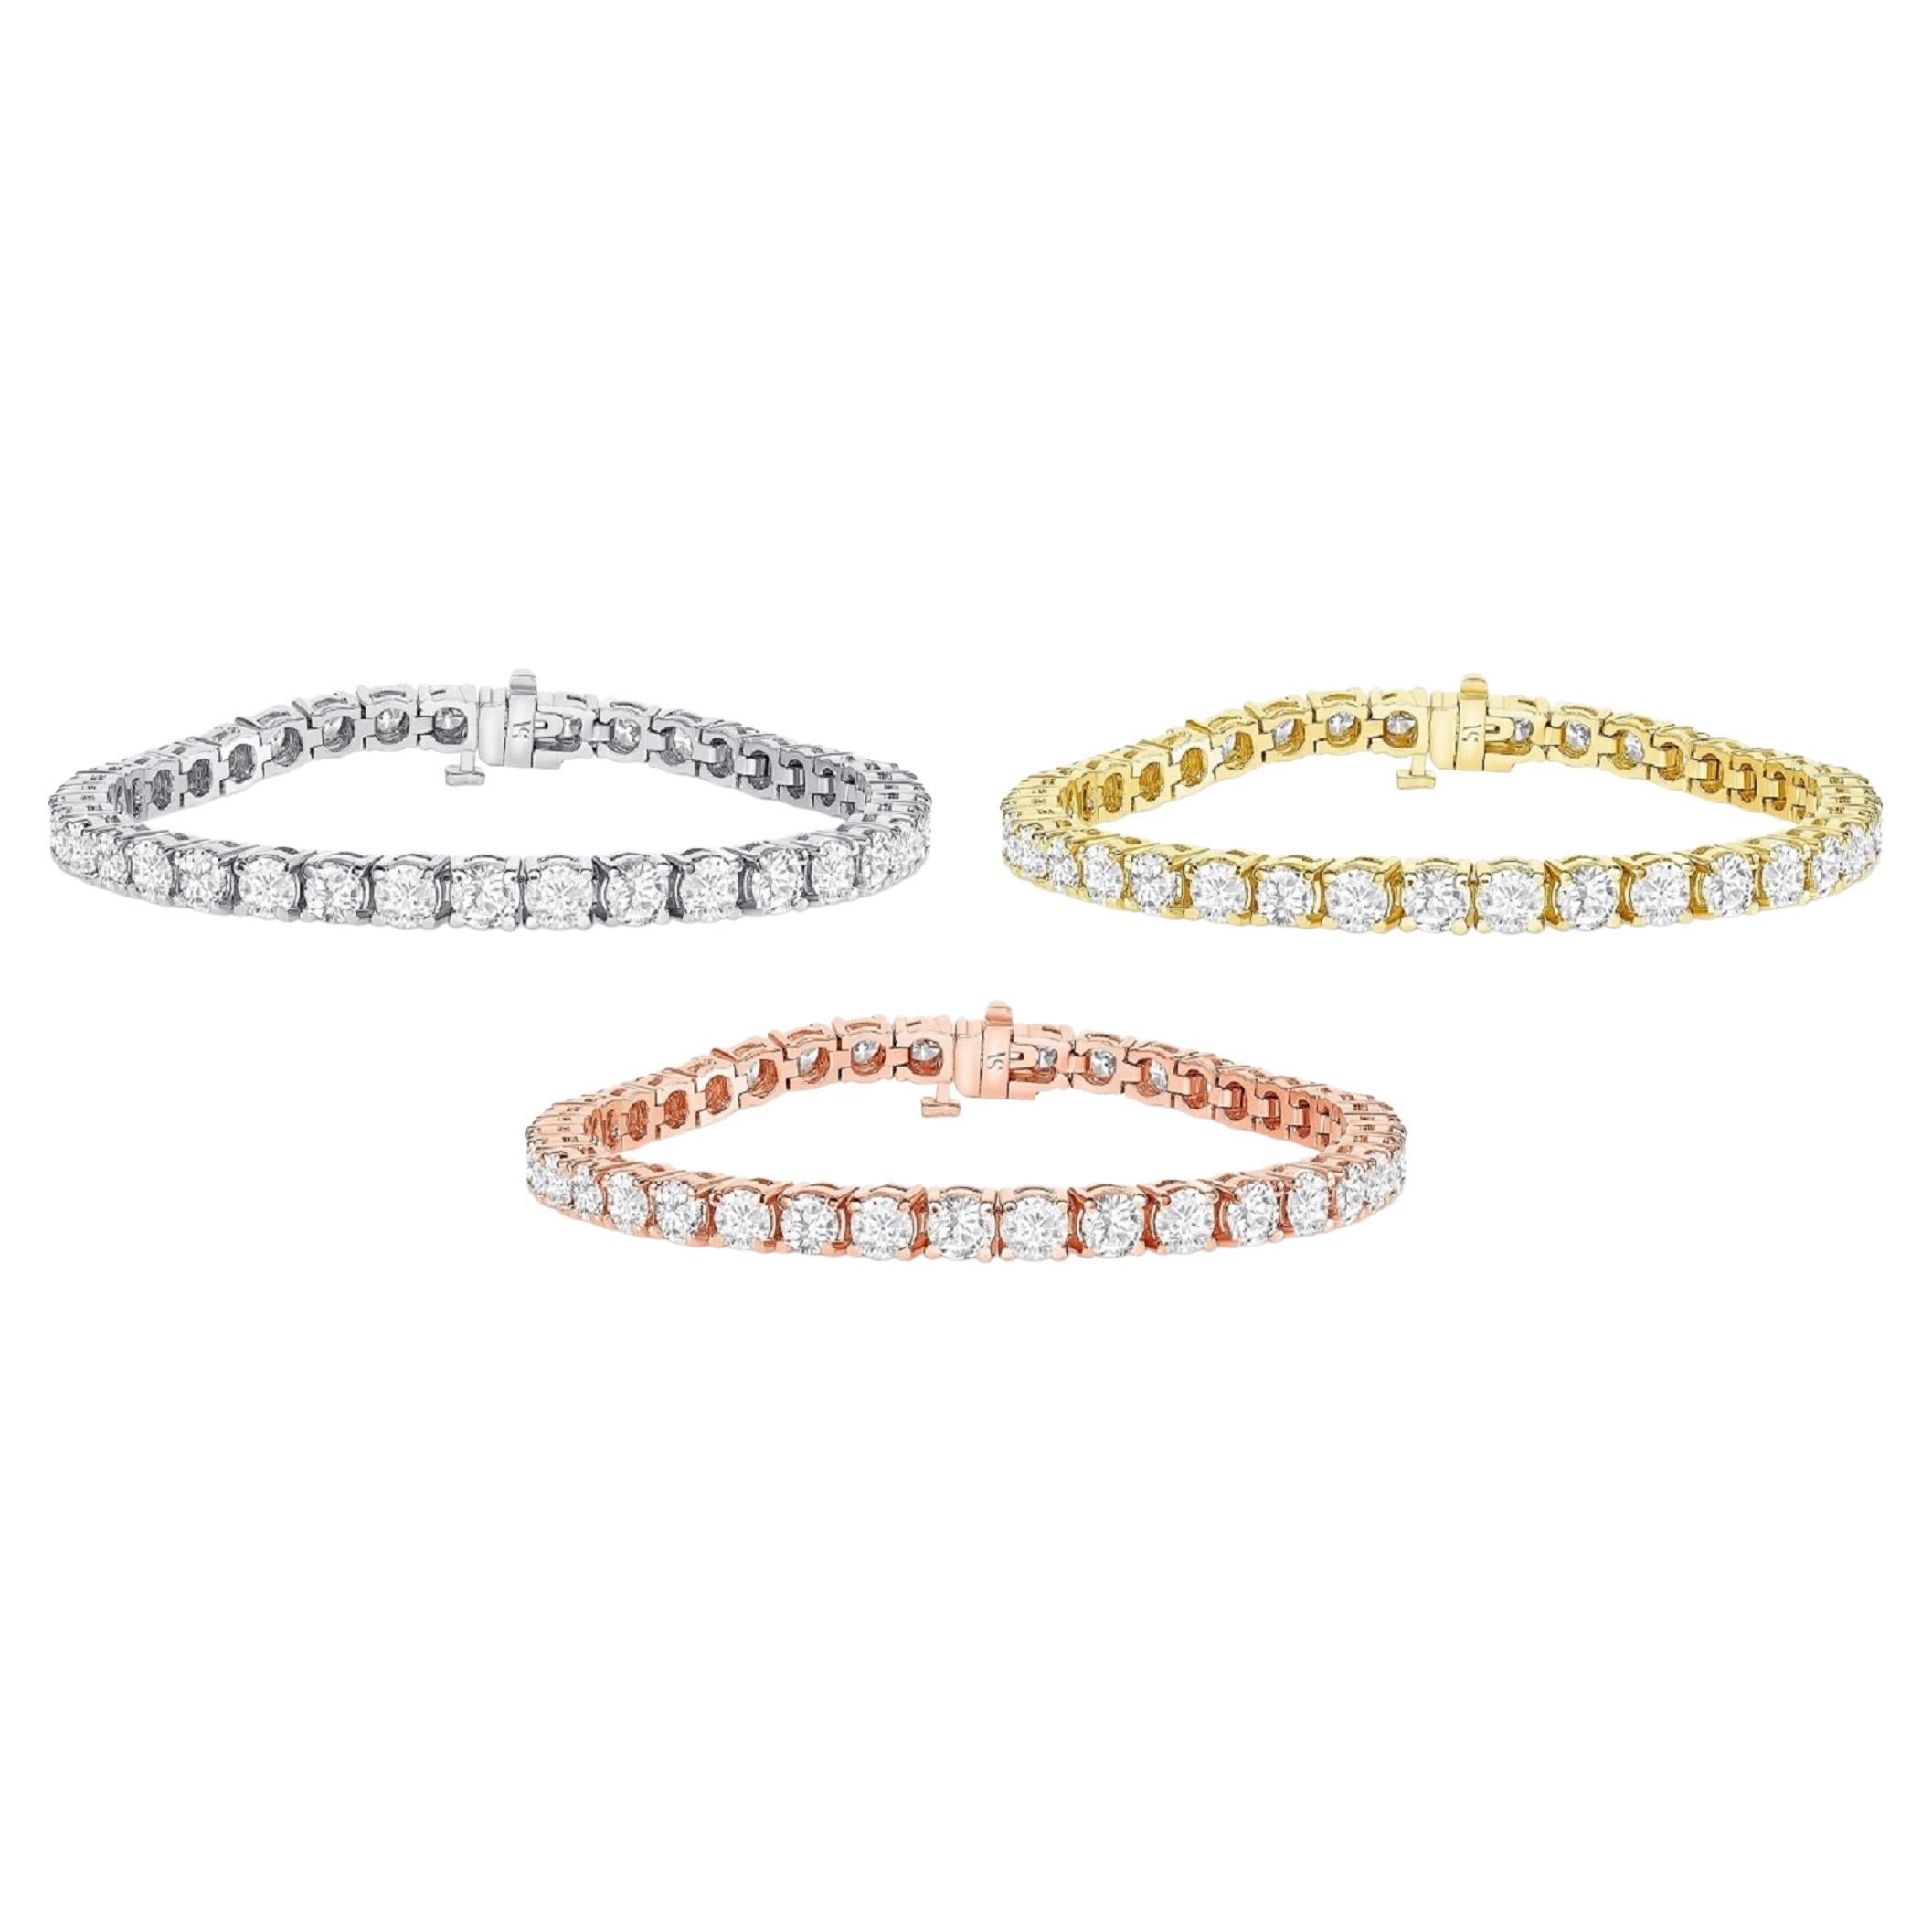 Bracelets de tennis 8,50 carats poids total, or massif 14 carats, bracelet en diamants et diamants ronds